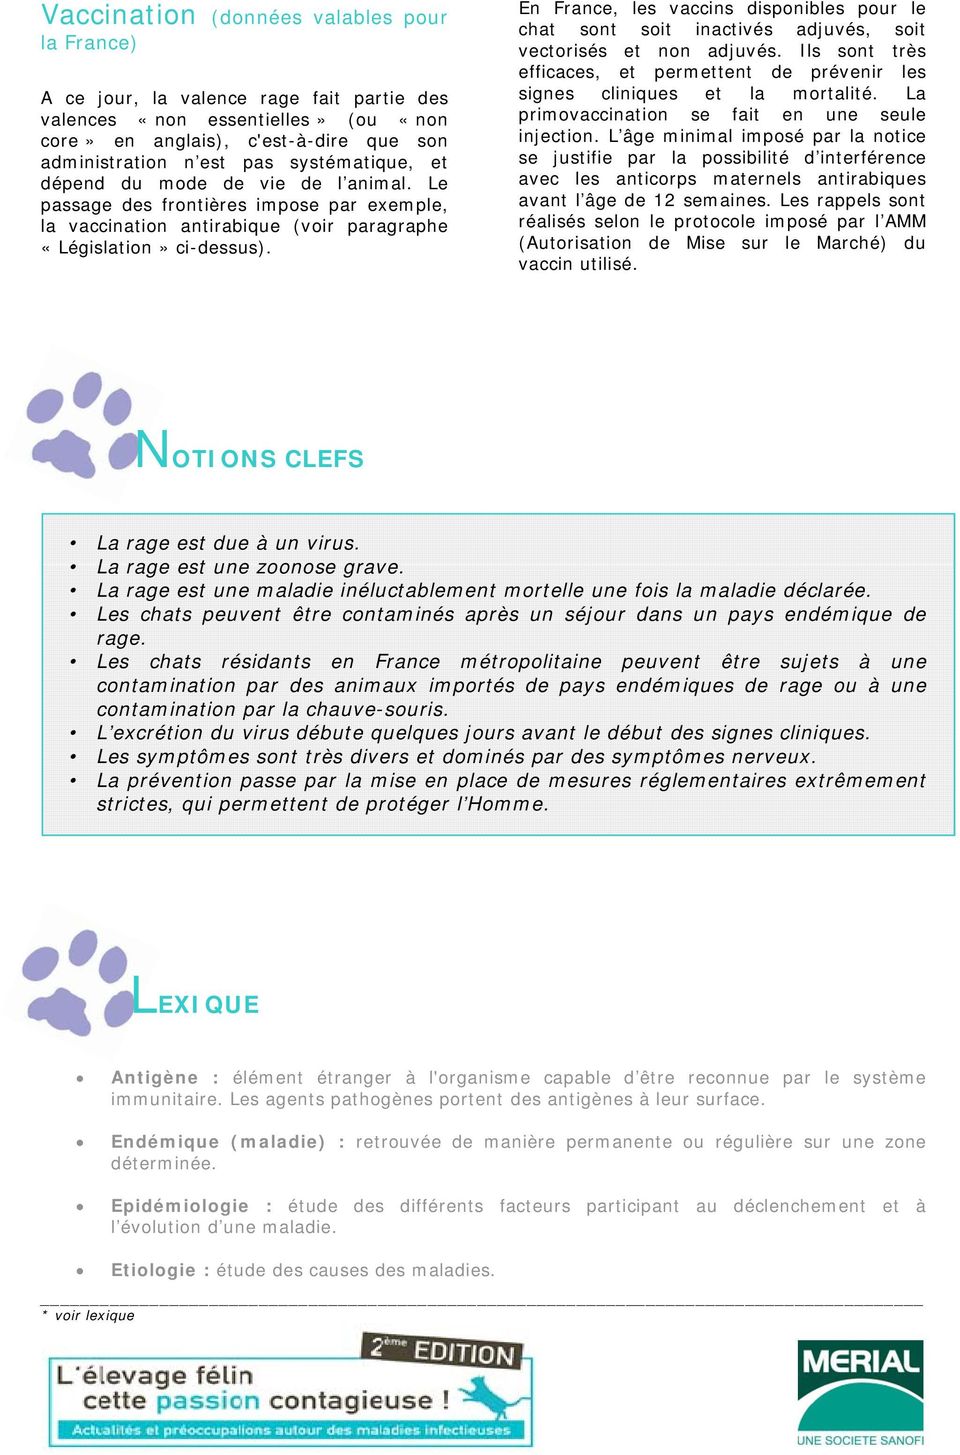 En France, les vaccins disponibles pour le chat sont soit inactivés adjuvés, soit vectorisés et non adjuvés. Ils sont très efficaces, et permettent de prévenir les signes cliniques et la mortalité.